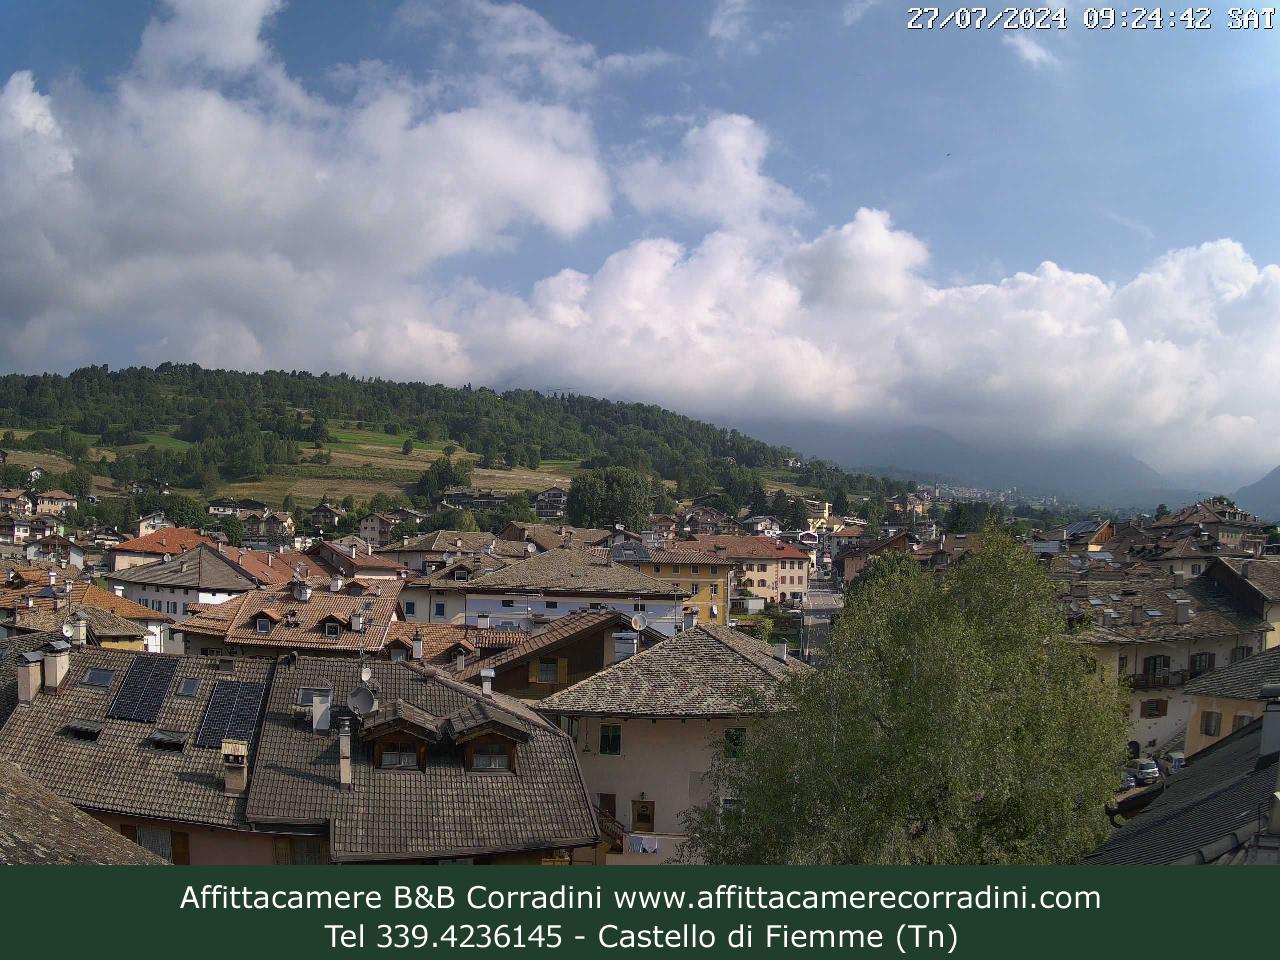 Webcam Castello di Fiemme Affittacamere B&B Corradini Trentino